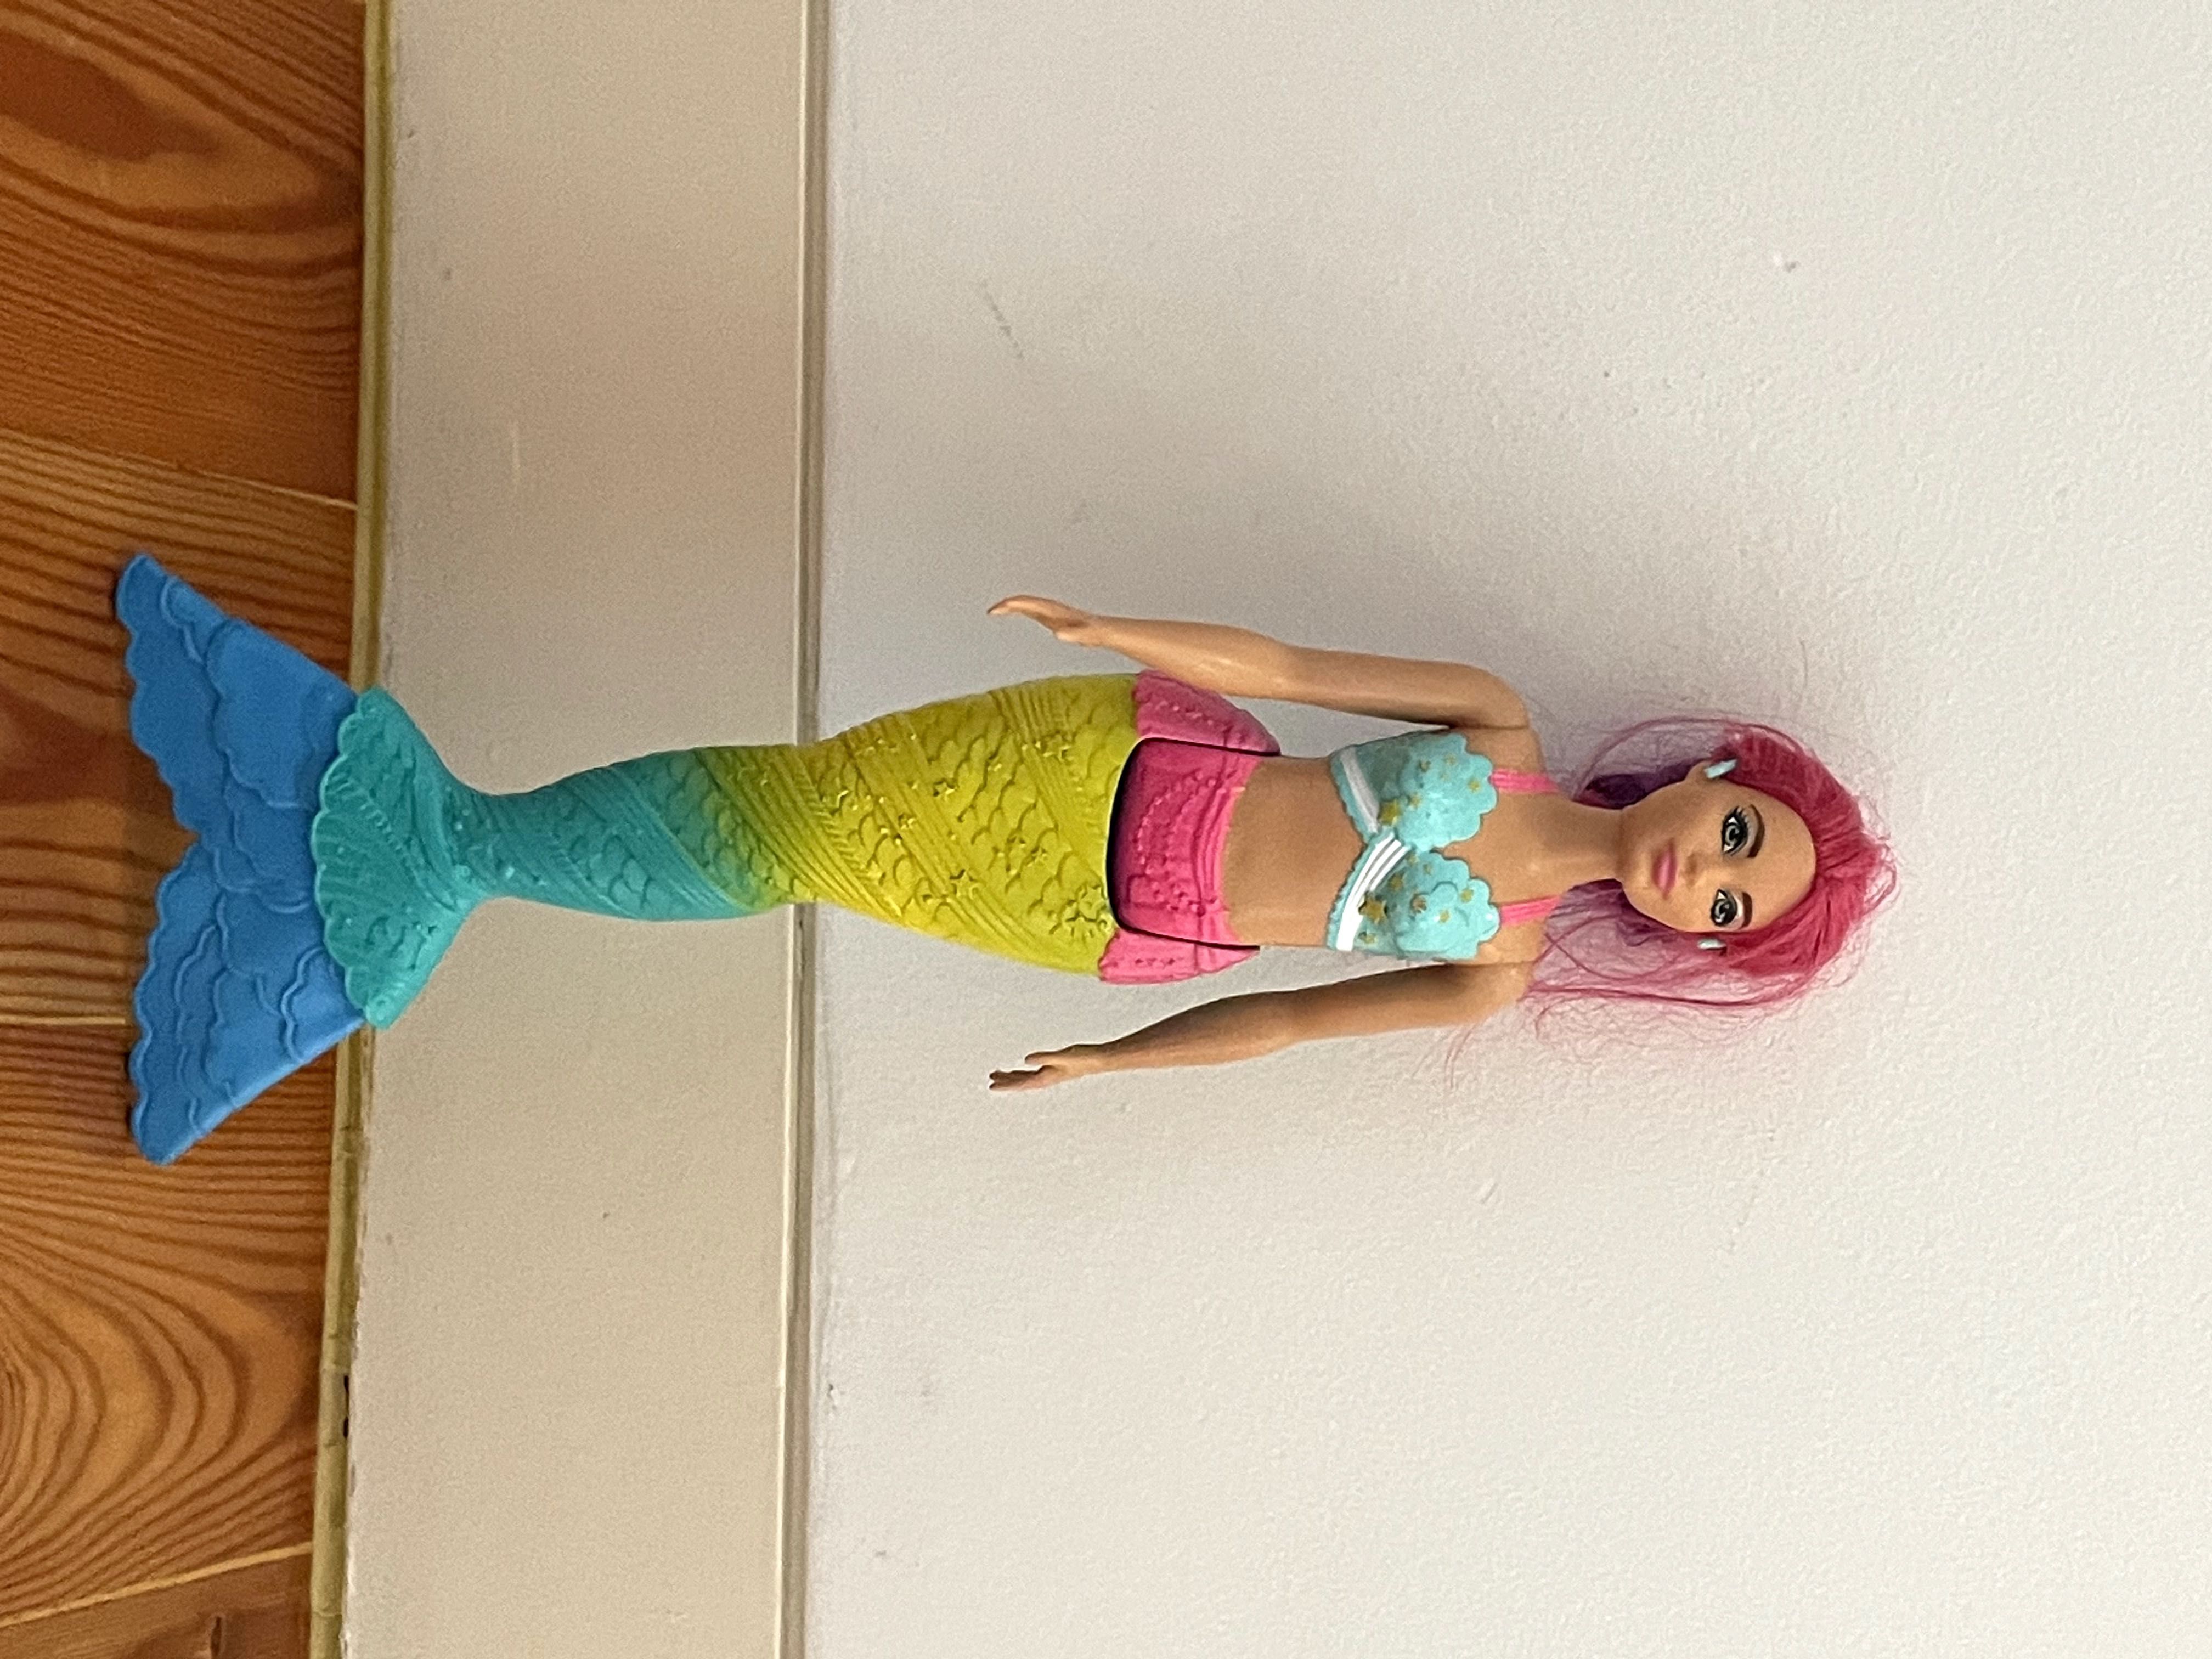 Barbie Sereia - Brinquedos - Jogos - OLX Portugal